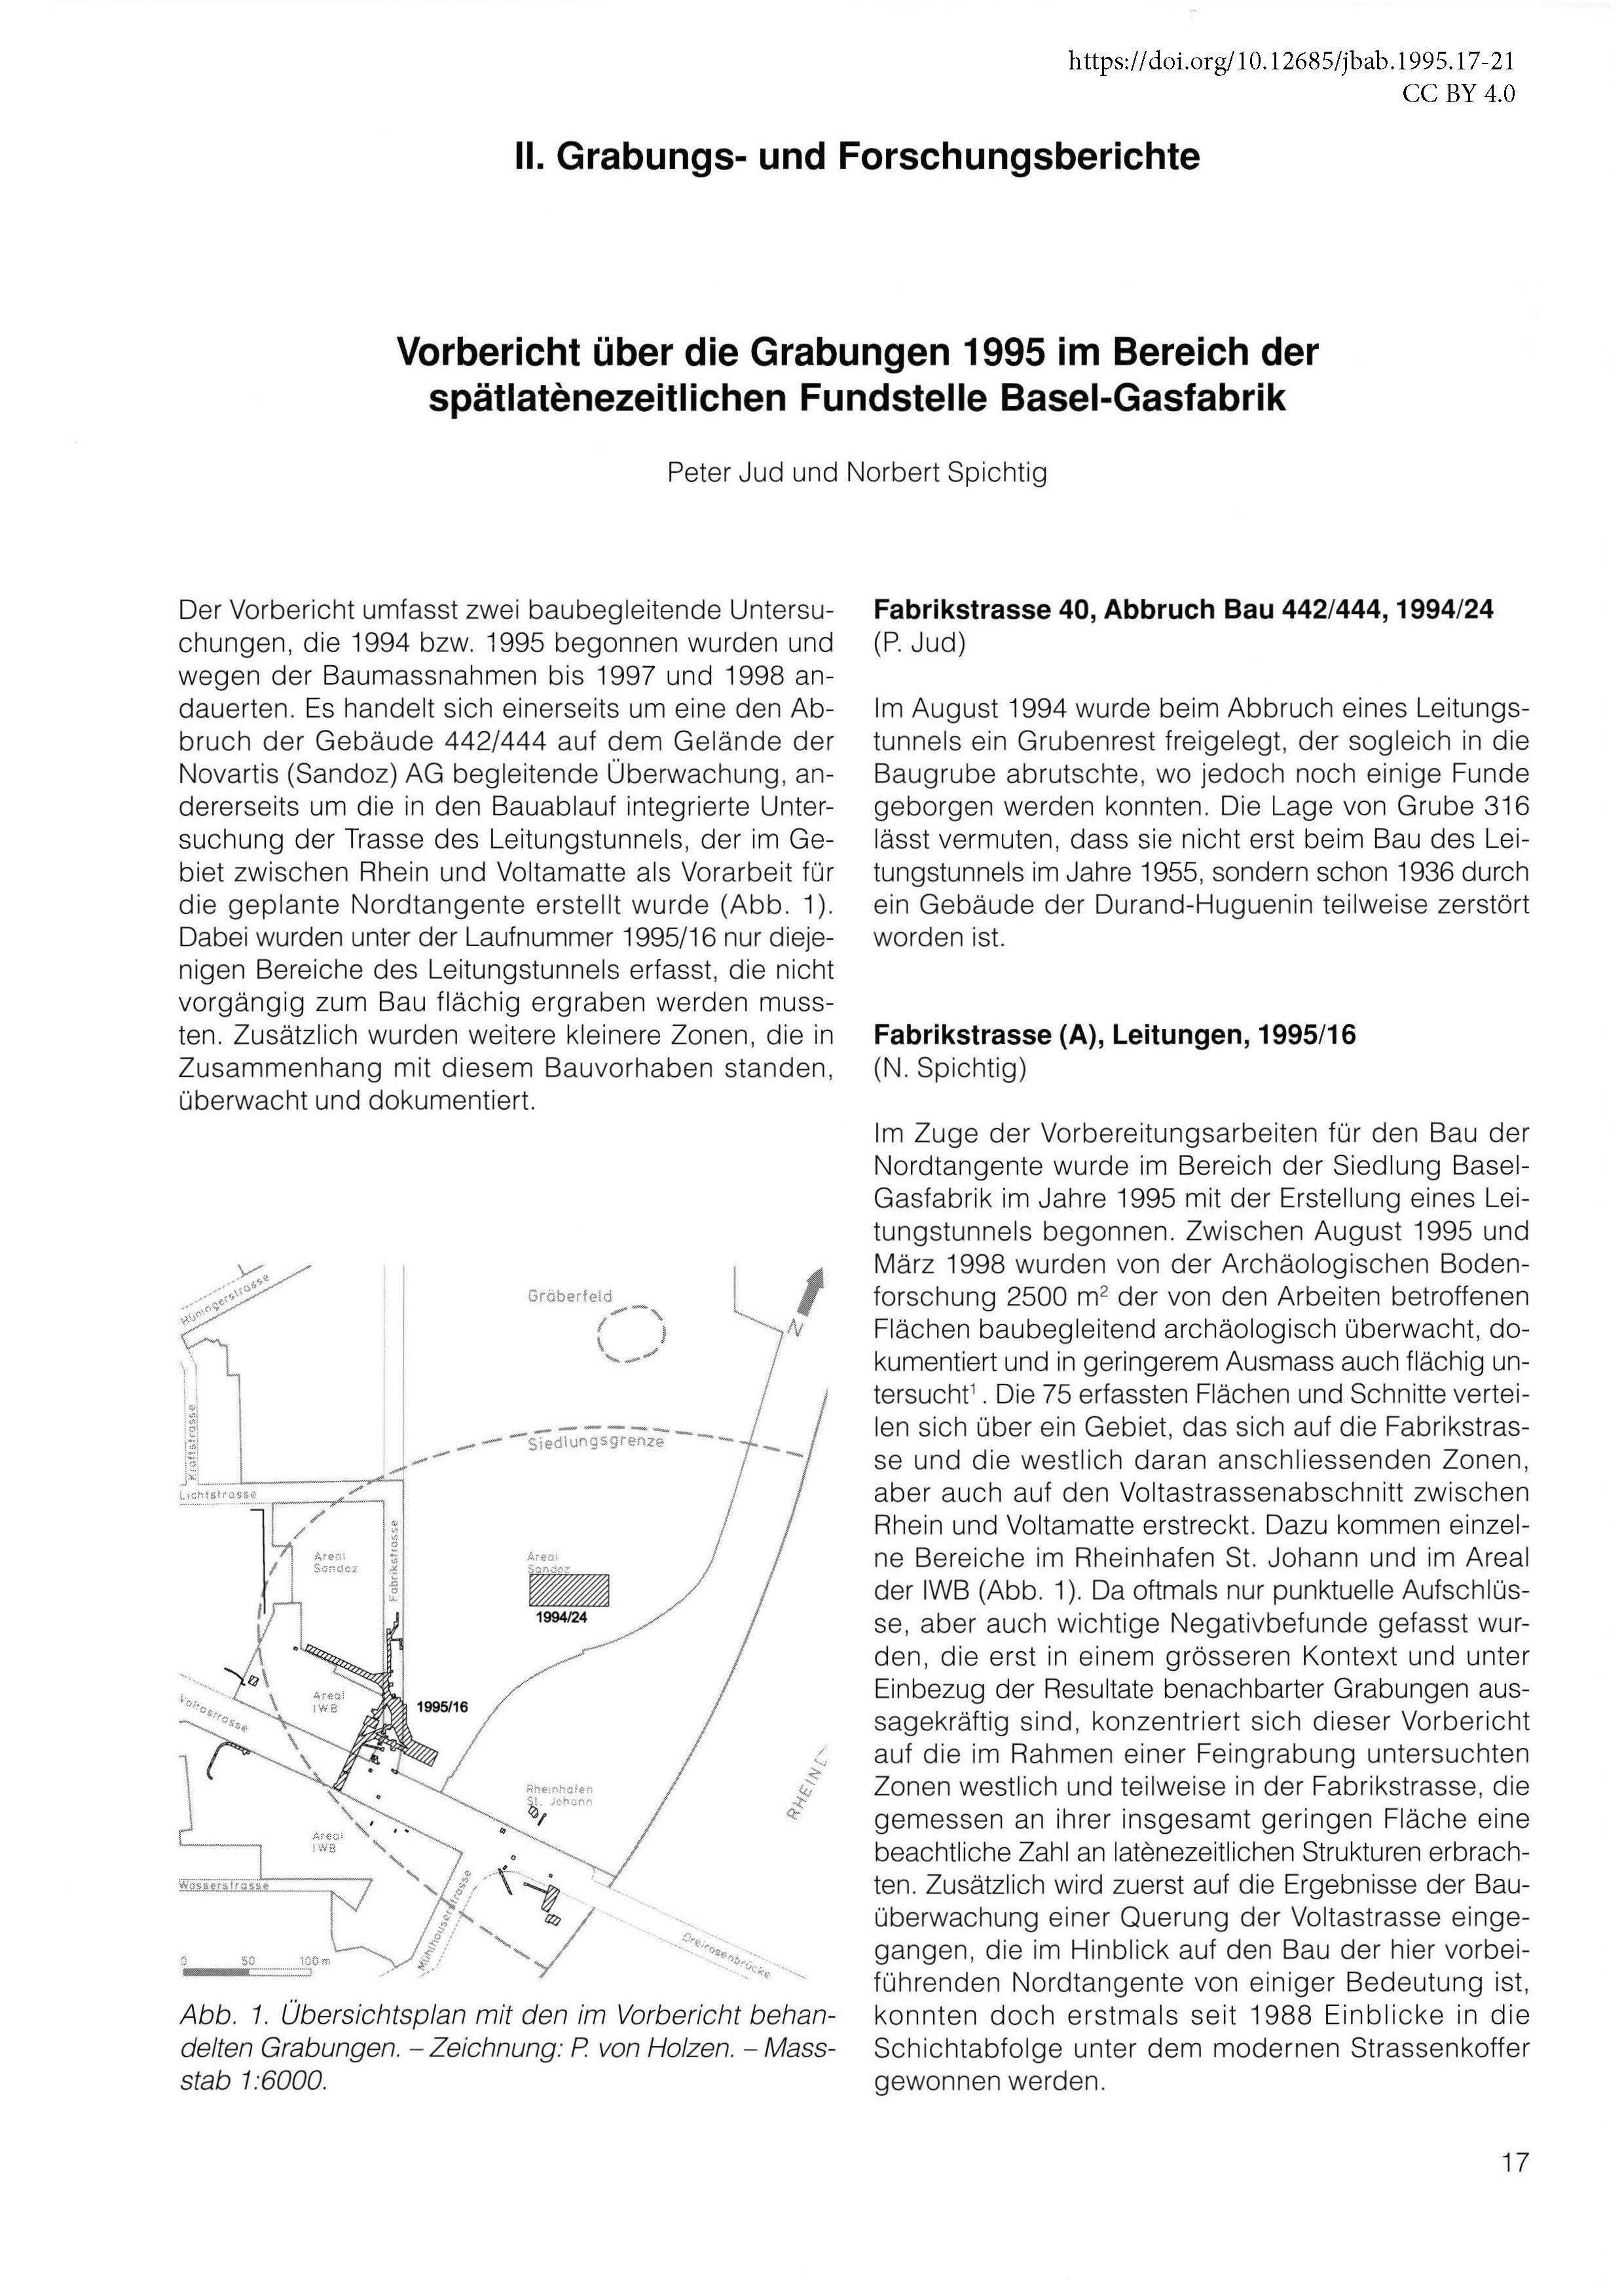 Erste Seite des Vorberichts über die Grabungen bei Basel-Gasfabrik